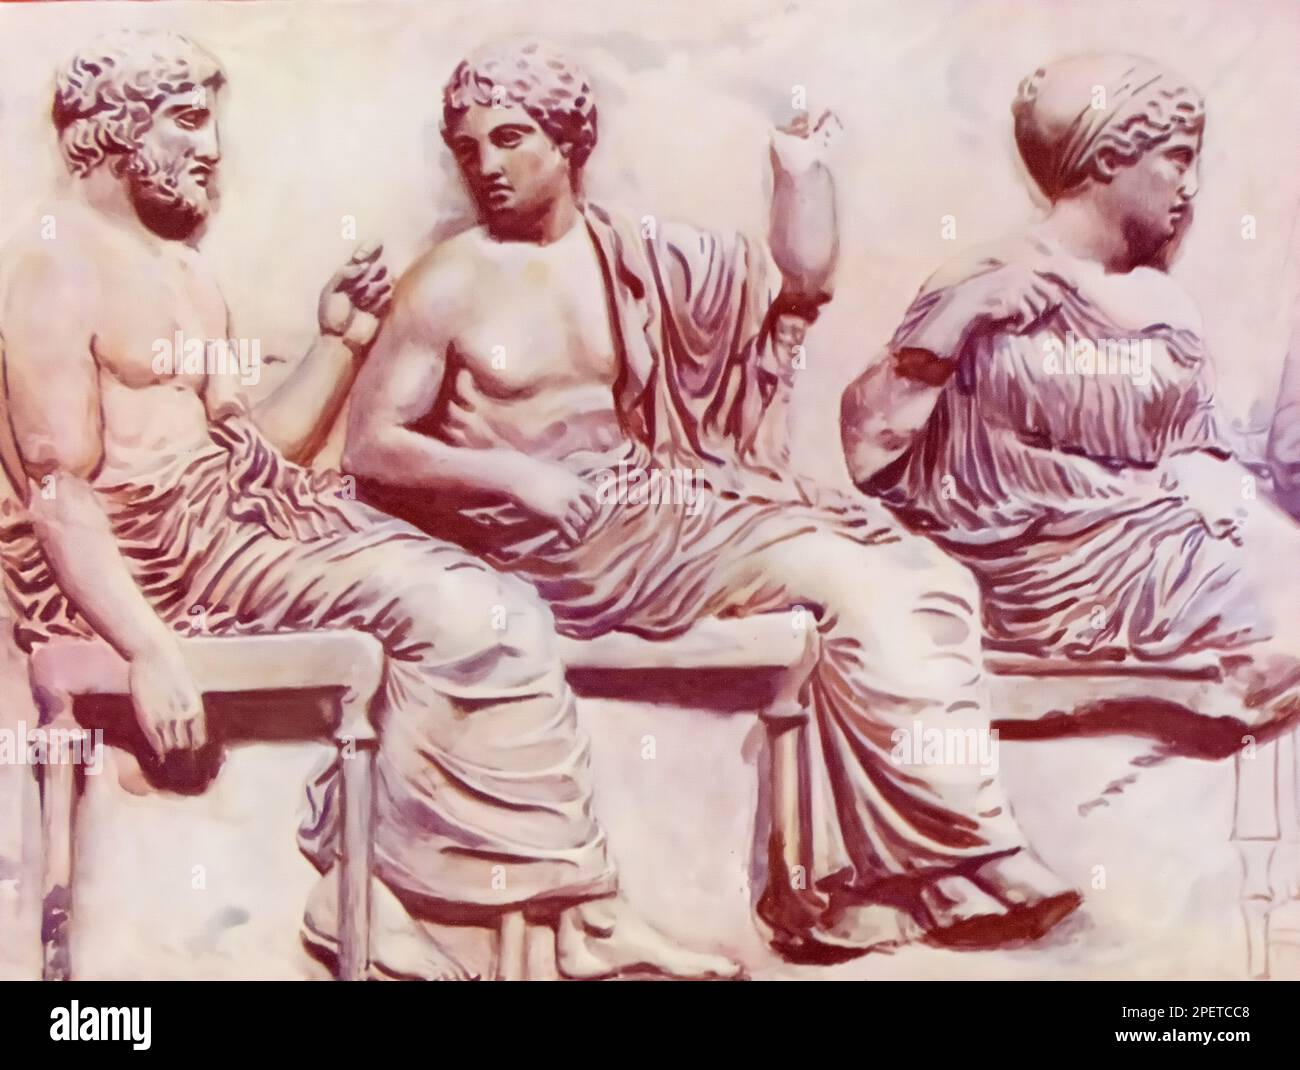 Eine Illustration eines Details aus dem östlichen Friese des Parthenon, Griechenland. Von links die Götter Poseidon, Apollo oder Dionysos und die Göttin Peitho oder Demeter. Stockfoto